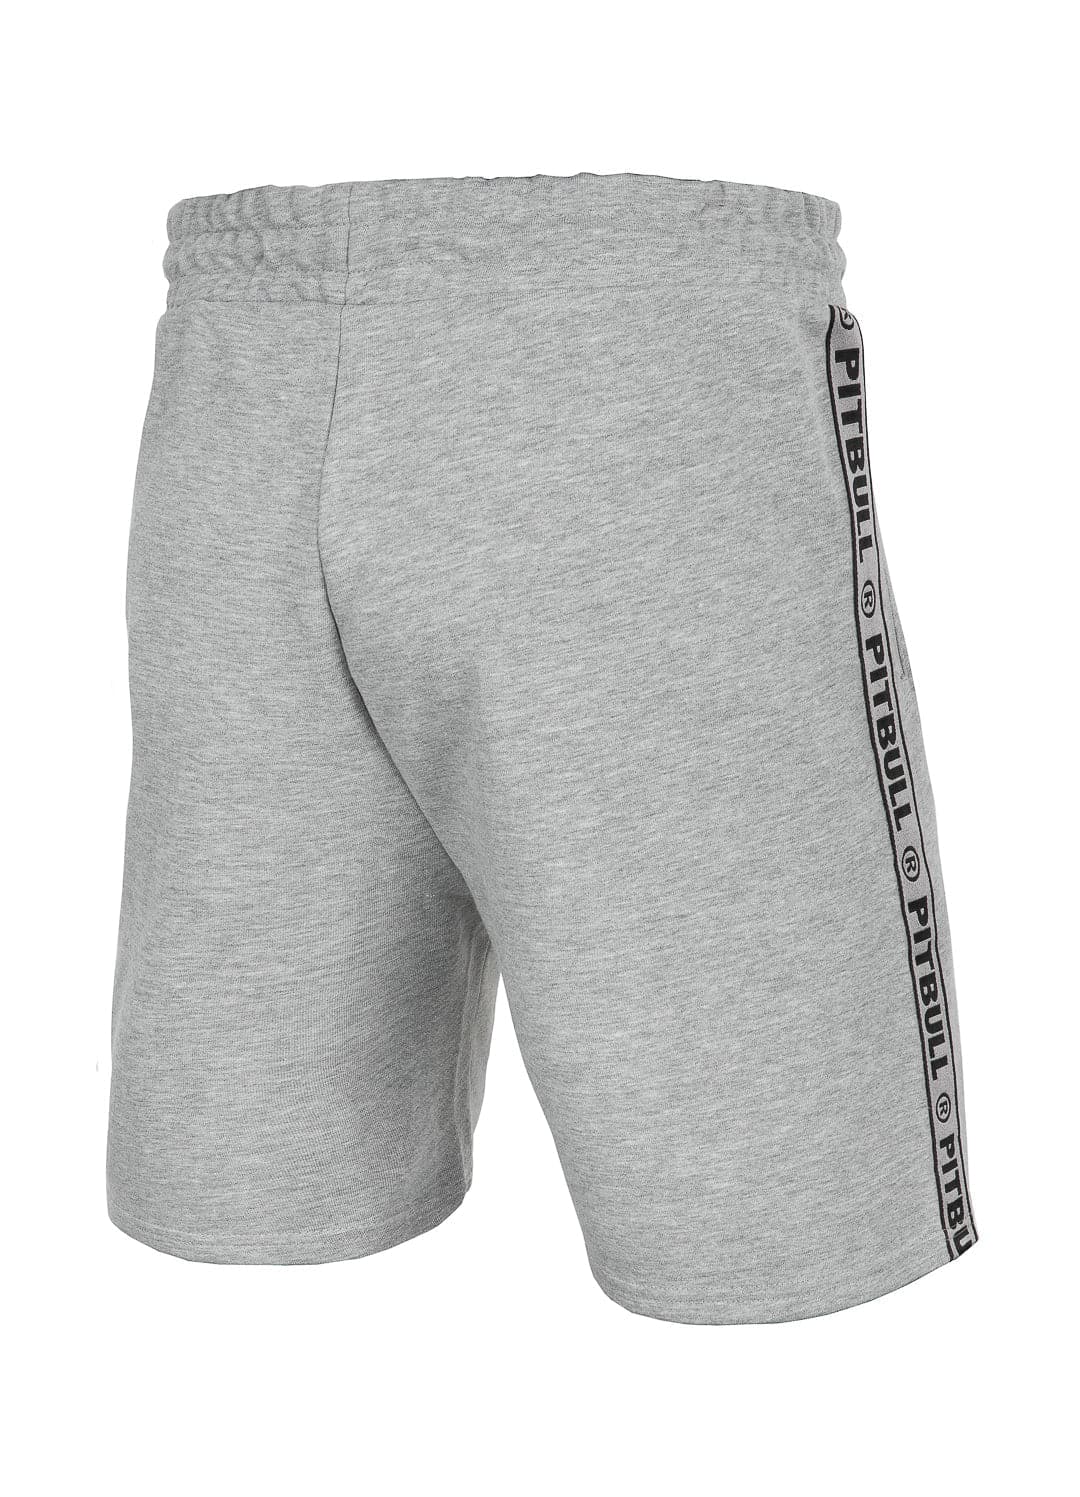 MERIDAN Grey Shorts.